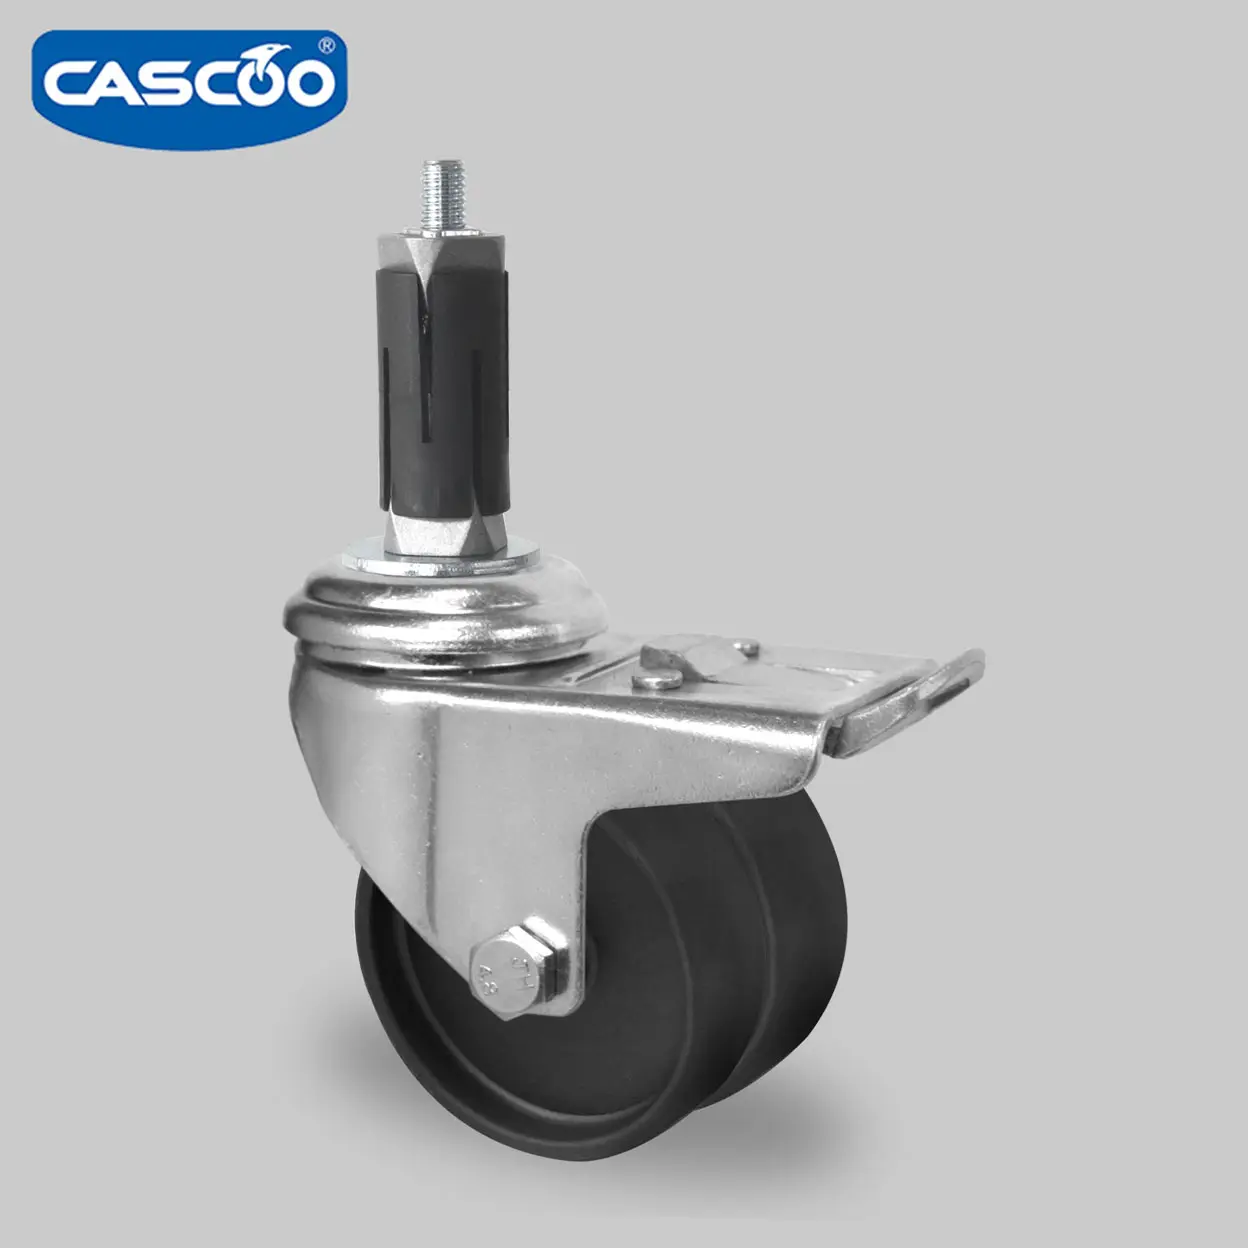 CASCOO Rueda doble de nailon de 50mm con freno y expansor para rueda médica y rueda giratoria para cubiertos